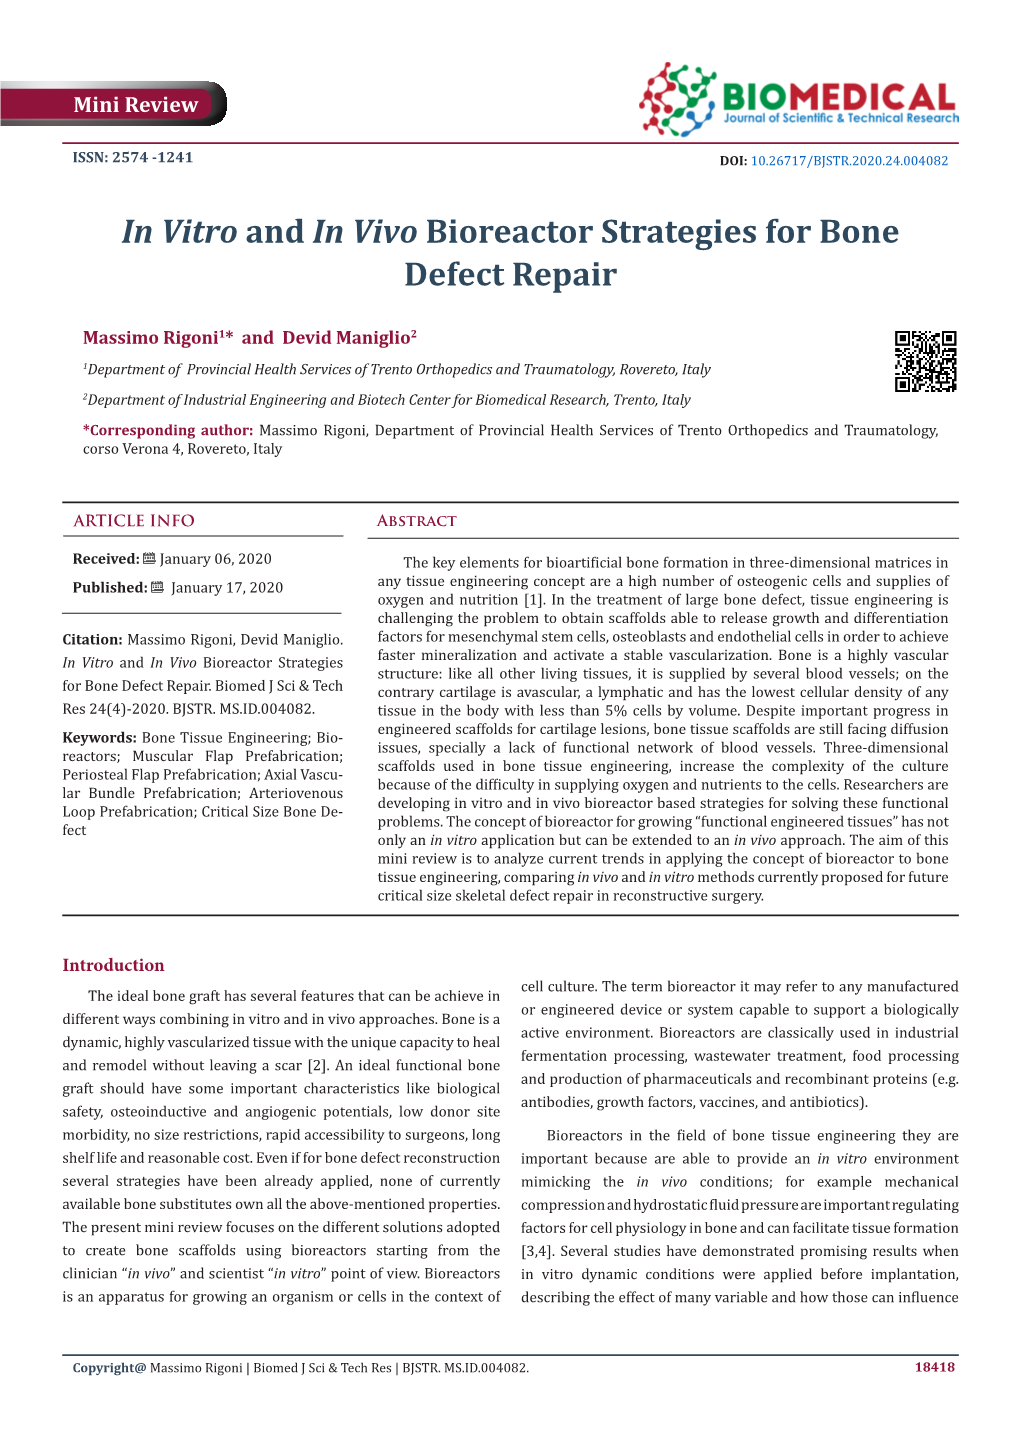 In Vitro and in Vivo Bioreactor Strategies for Bone Defect Repair